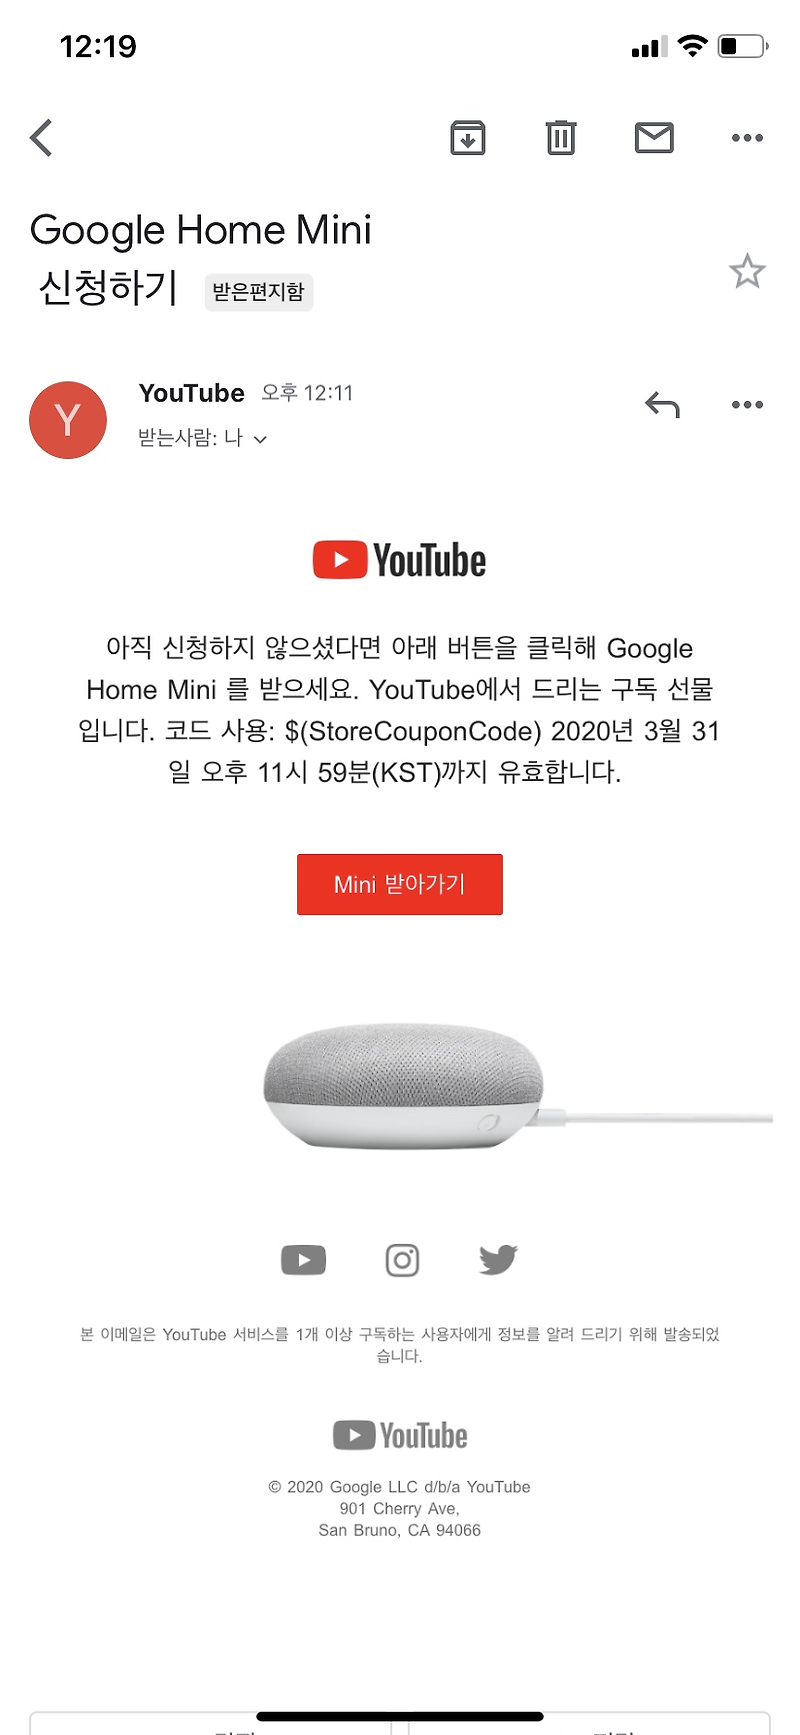 [구글 홈 미니 개봉기] 헤이 구글! 5분만에 세팅하기 / 유튜브 노래이 재생된다고?  블루투스스피커 추천